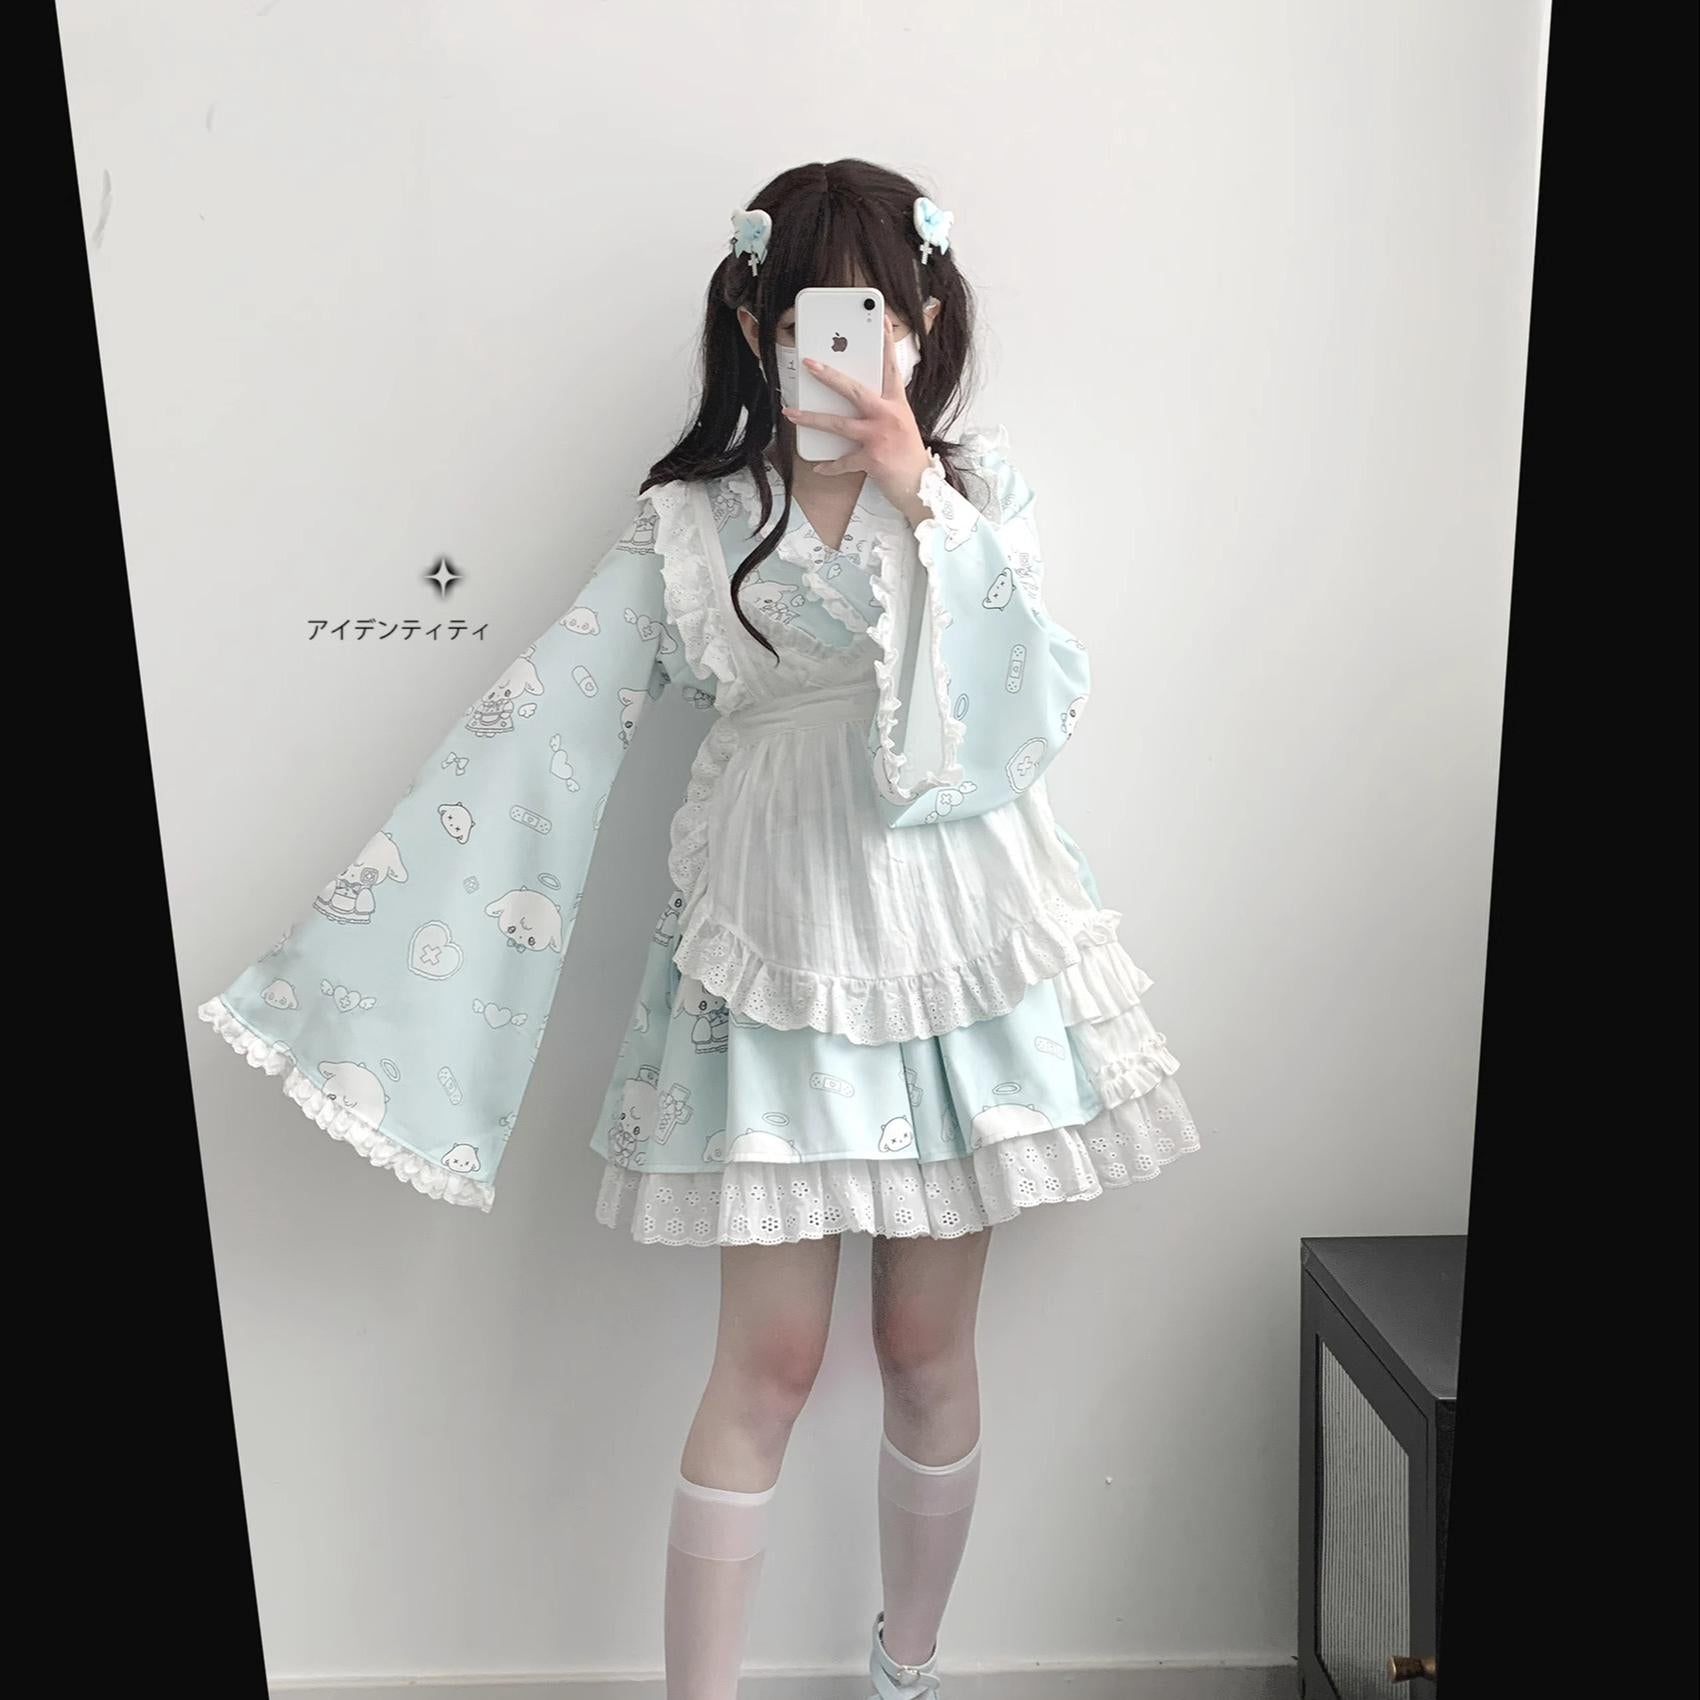 Tenshi Kaiwai Patchwork Skirt Kimono Top White Apron Three-Piece Set 36786:536832